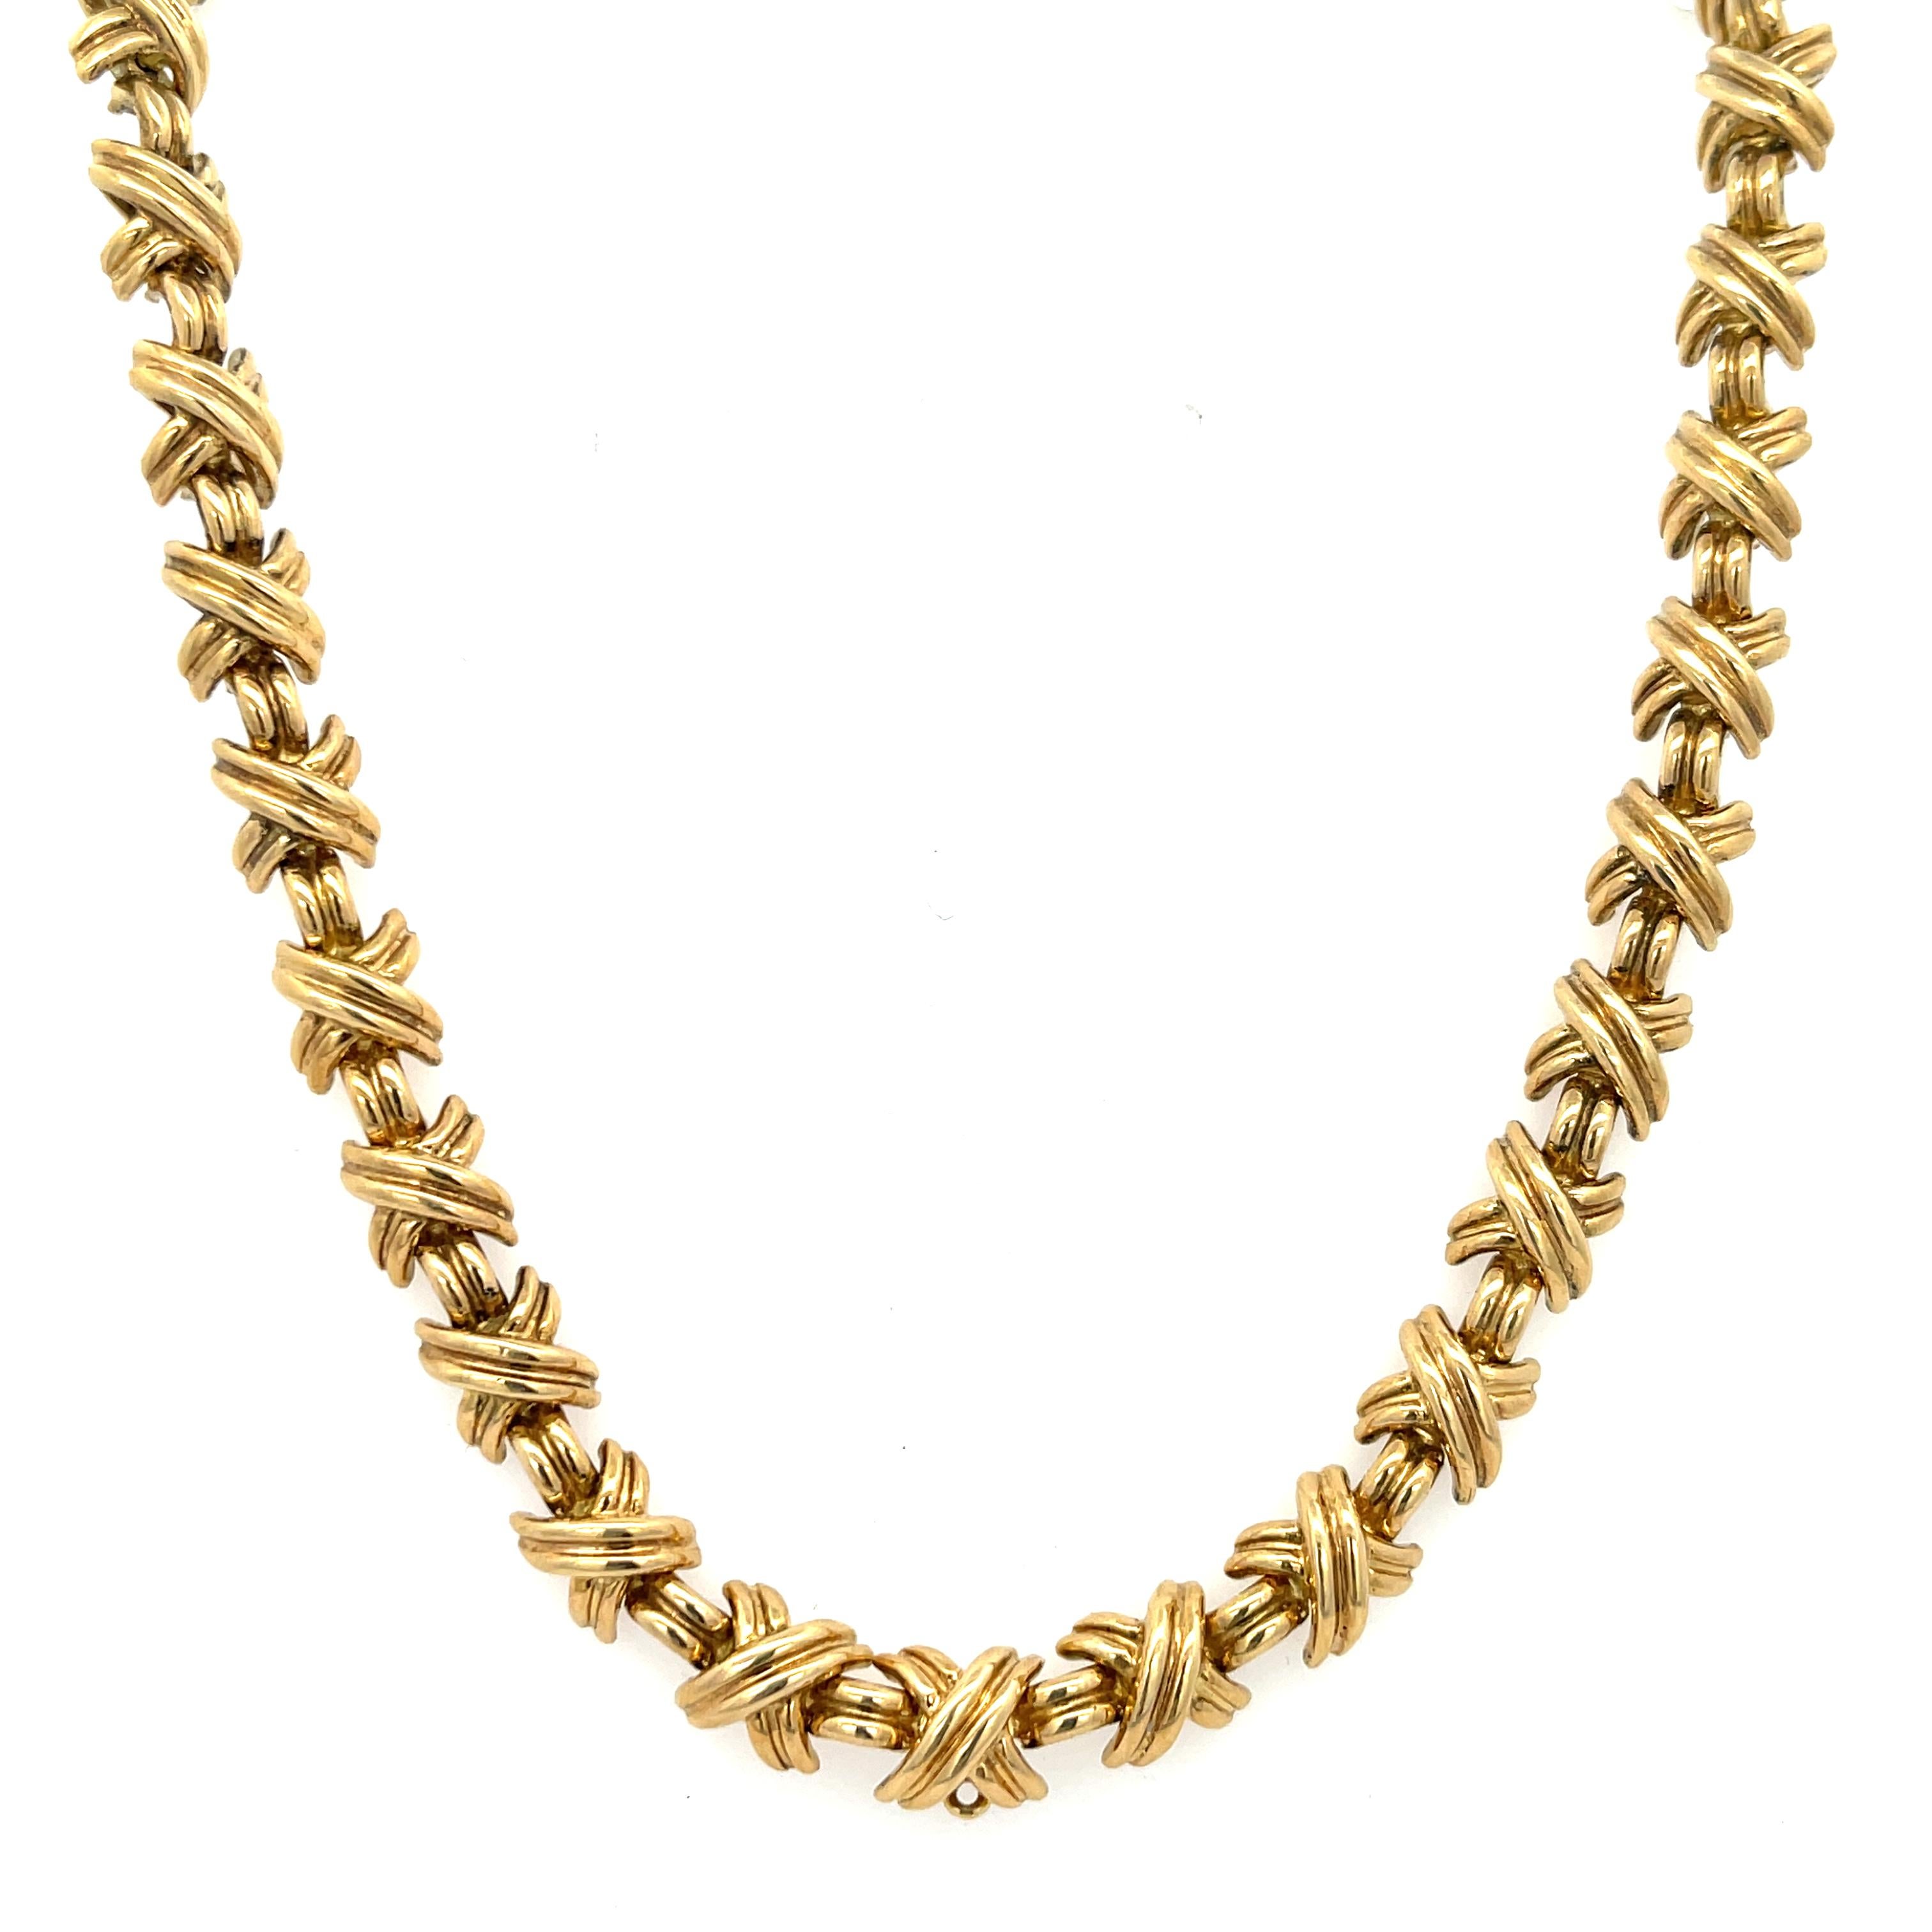 Nachlass Tiffany & Co. Small X Signature Collection'S Halskette aus 18 Karat Gelbgold. Die Halskette ist 16 5/8 Zoll lang,  1/4 Zoll breit und wiegt 70,80 Gramm. Die Halskette verfügt über einen versteckten Verschluss mit Sicherheitsverriegelung.